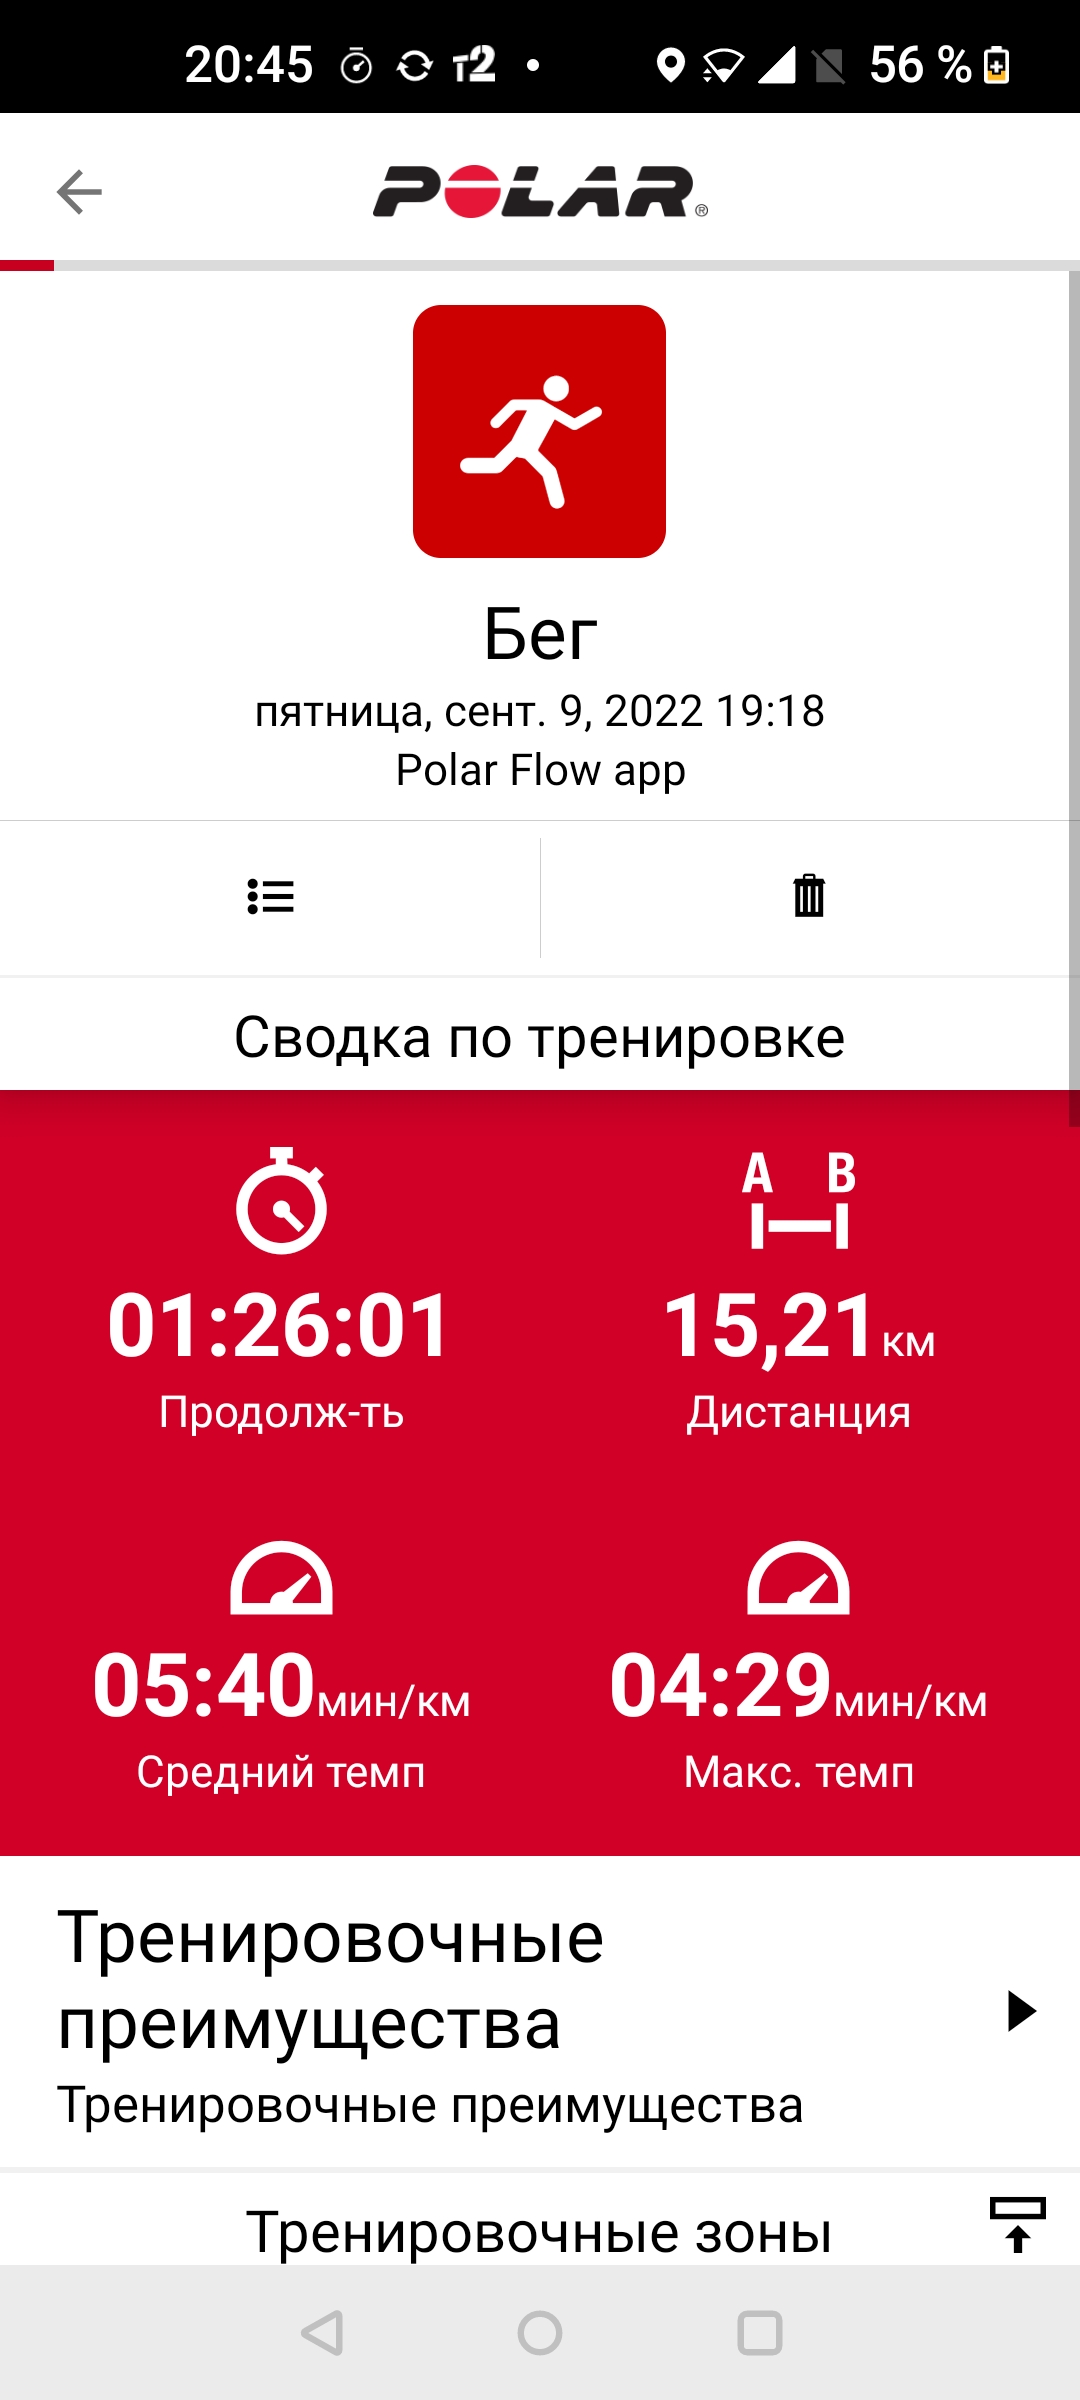  Загрузка от 09.09.2022 00:00:00 Чистяков Игорь 